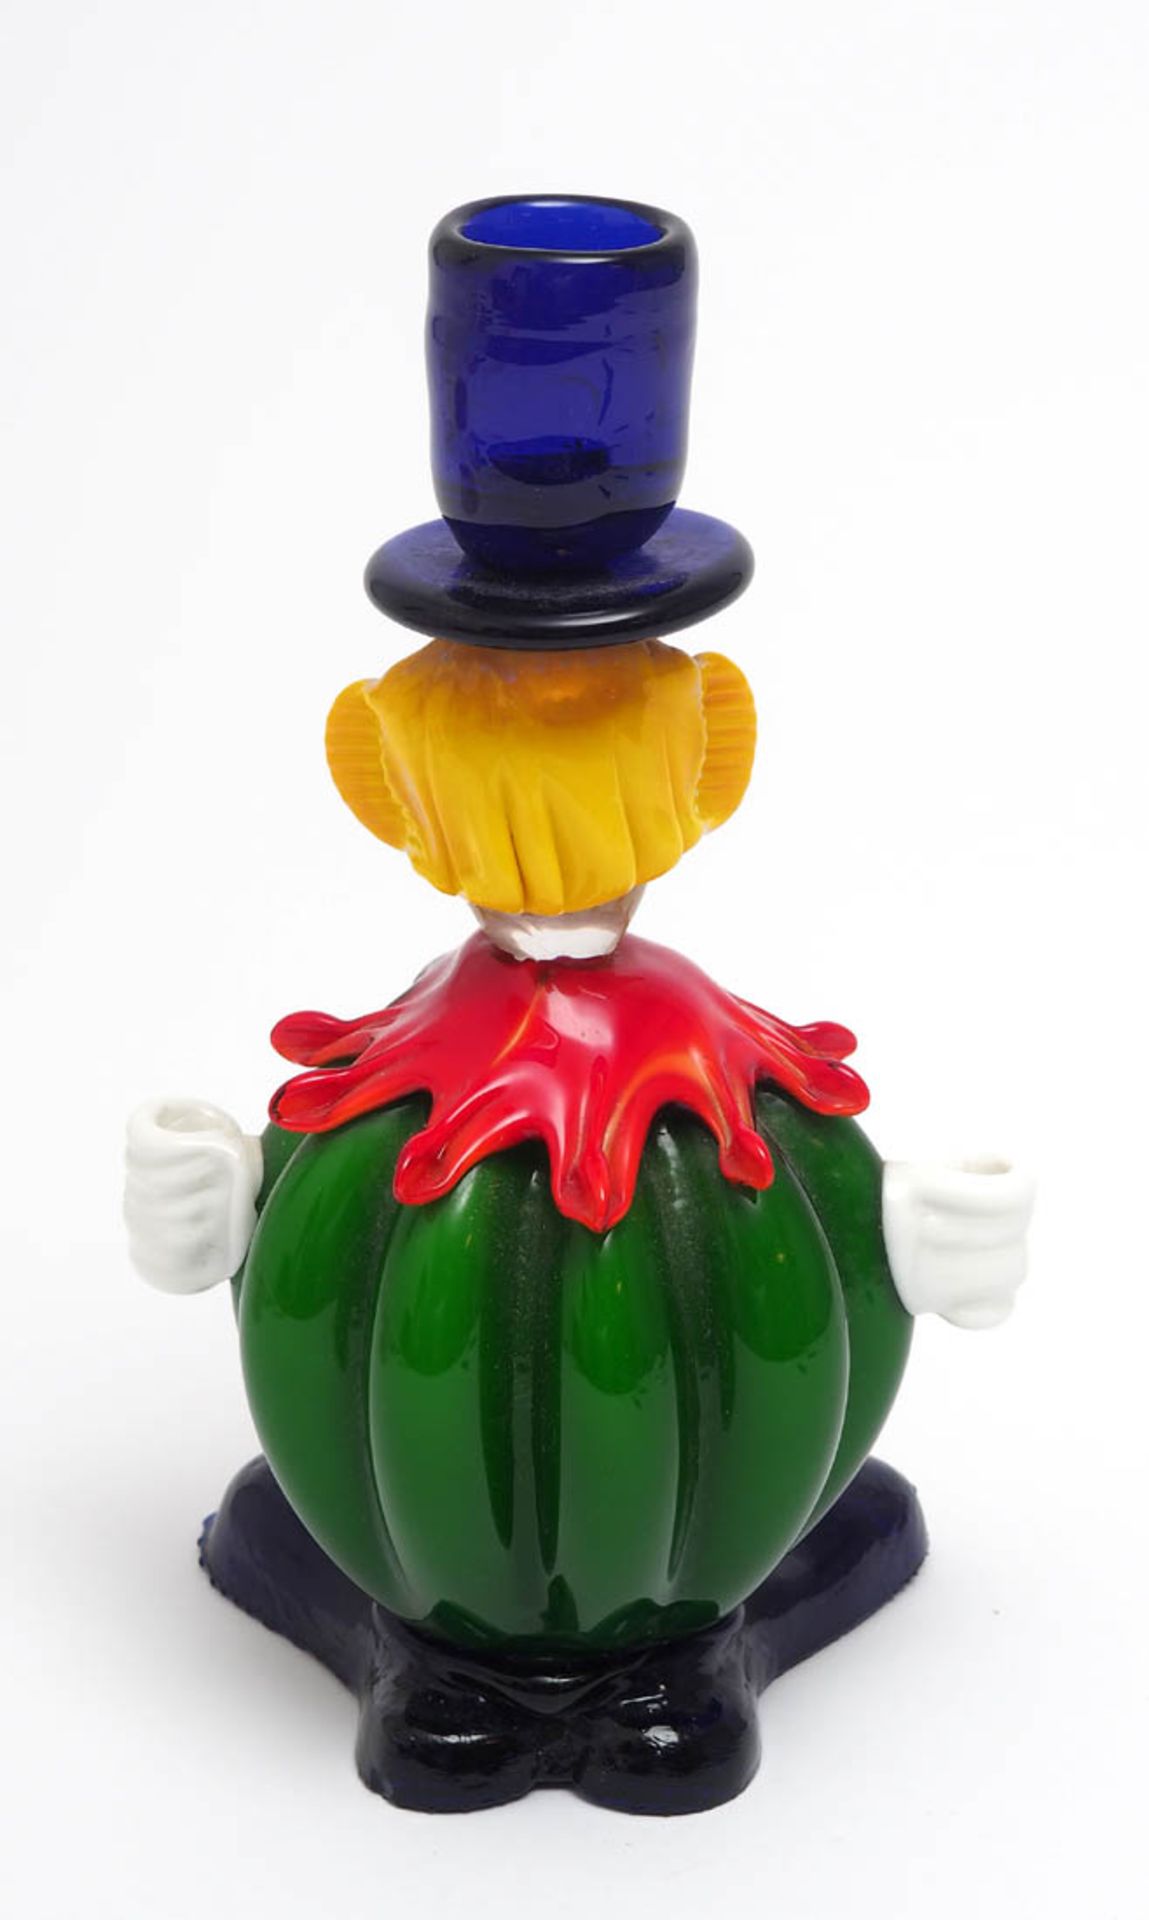 Kerzenhalter in Form eines Clowns, Murano Verschiedenfarbiges Glas. H.22,5cm. - Bild 3 aus 4